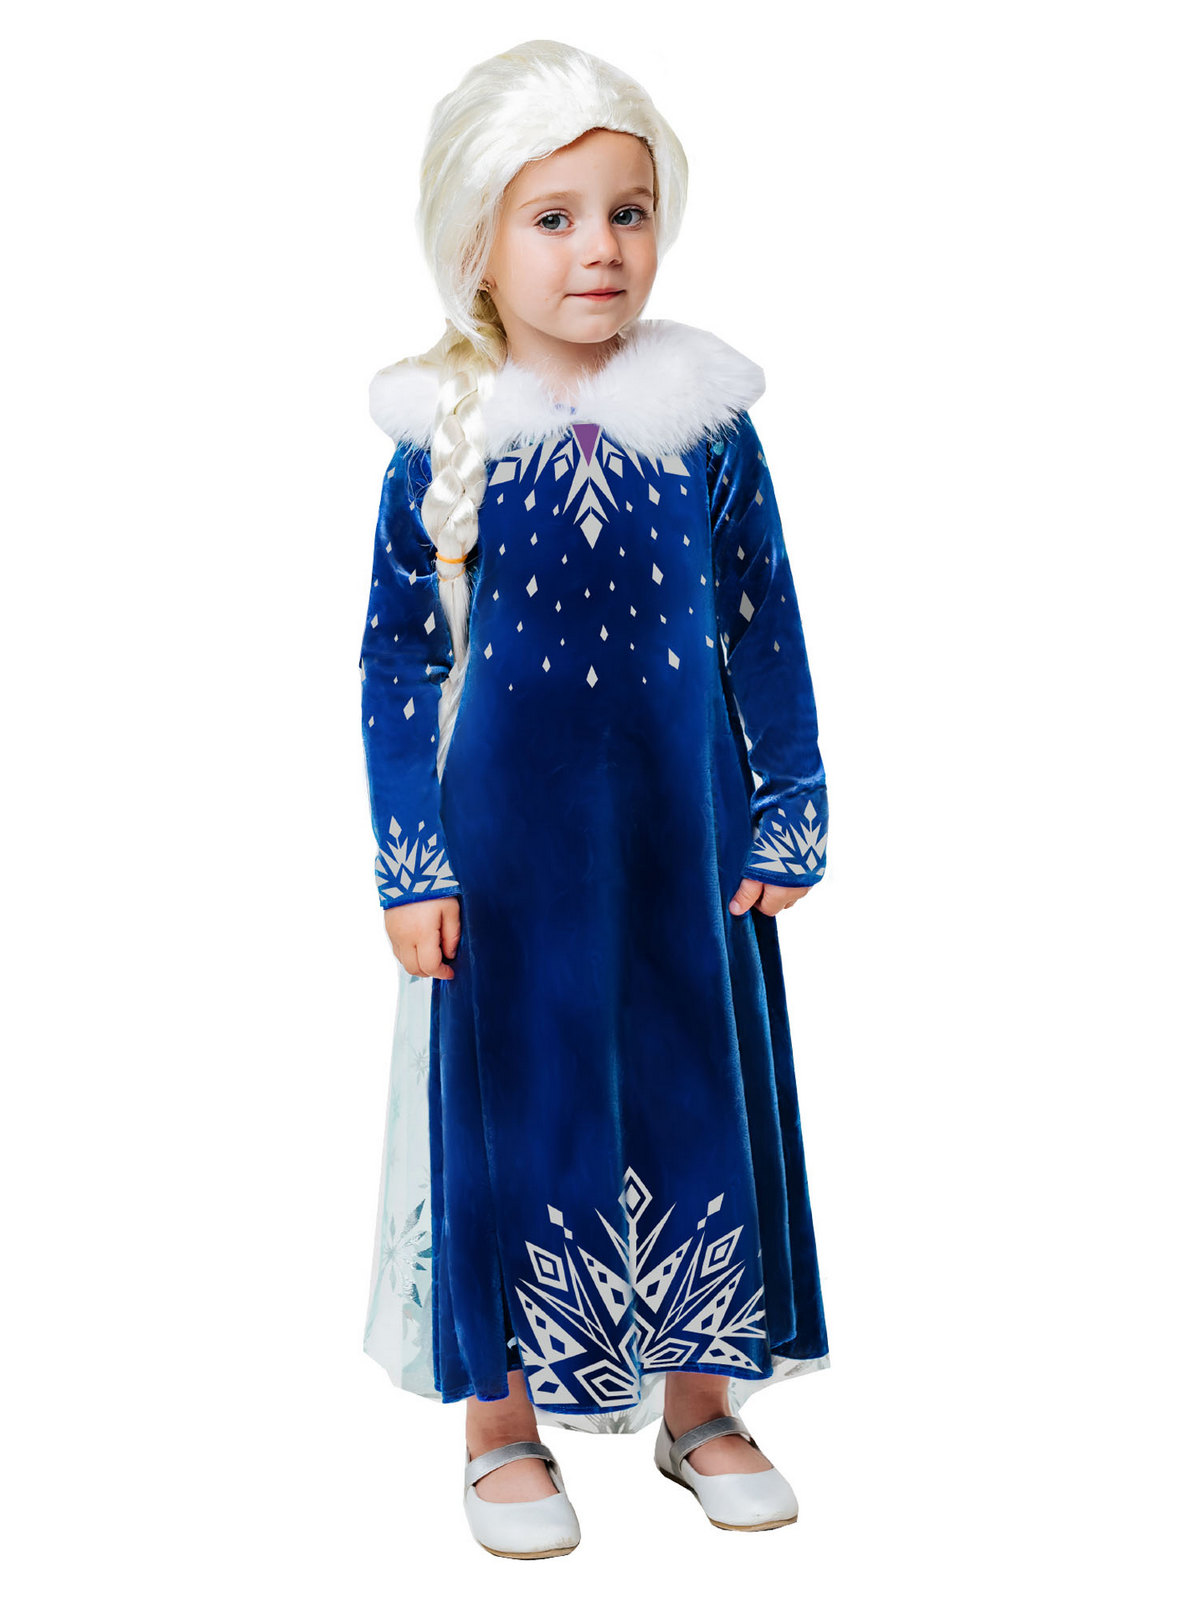 Карнавальный костюм Batik 9004 к-21 Эльза зимнее платье, синий, 104 карнавальный костюм batik 9004 к 21 эльза зимнее платье синий 128